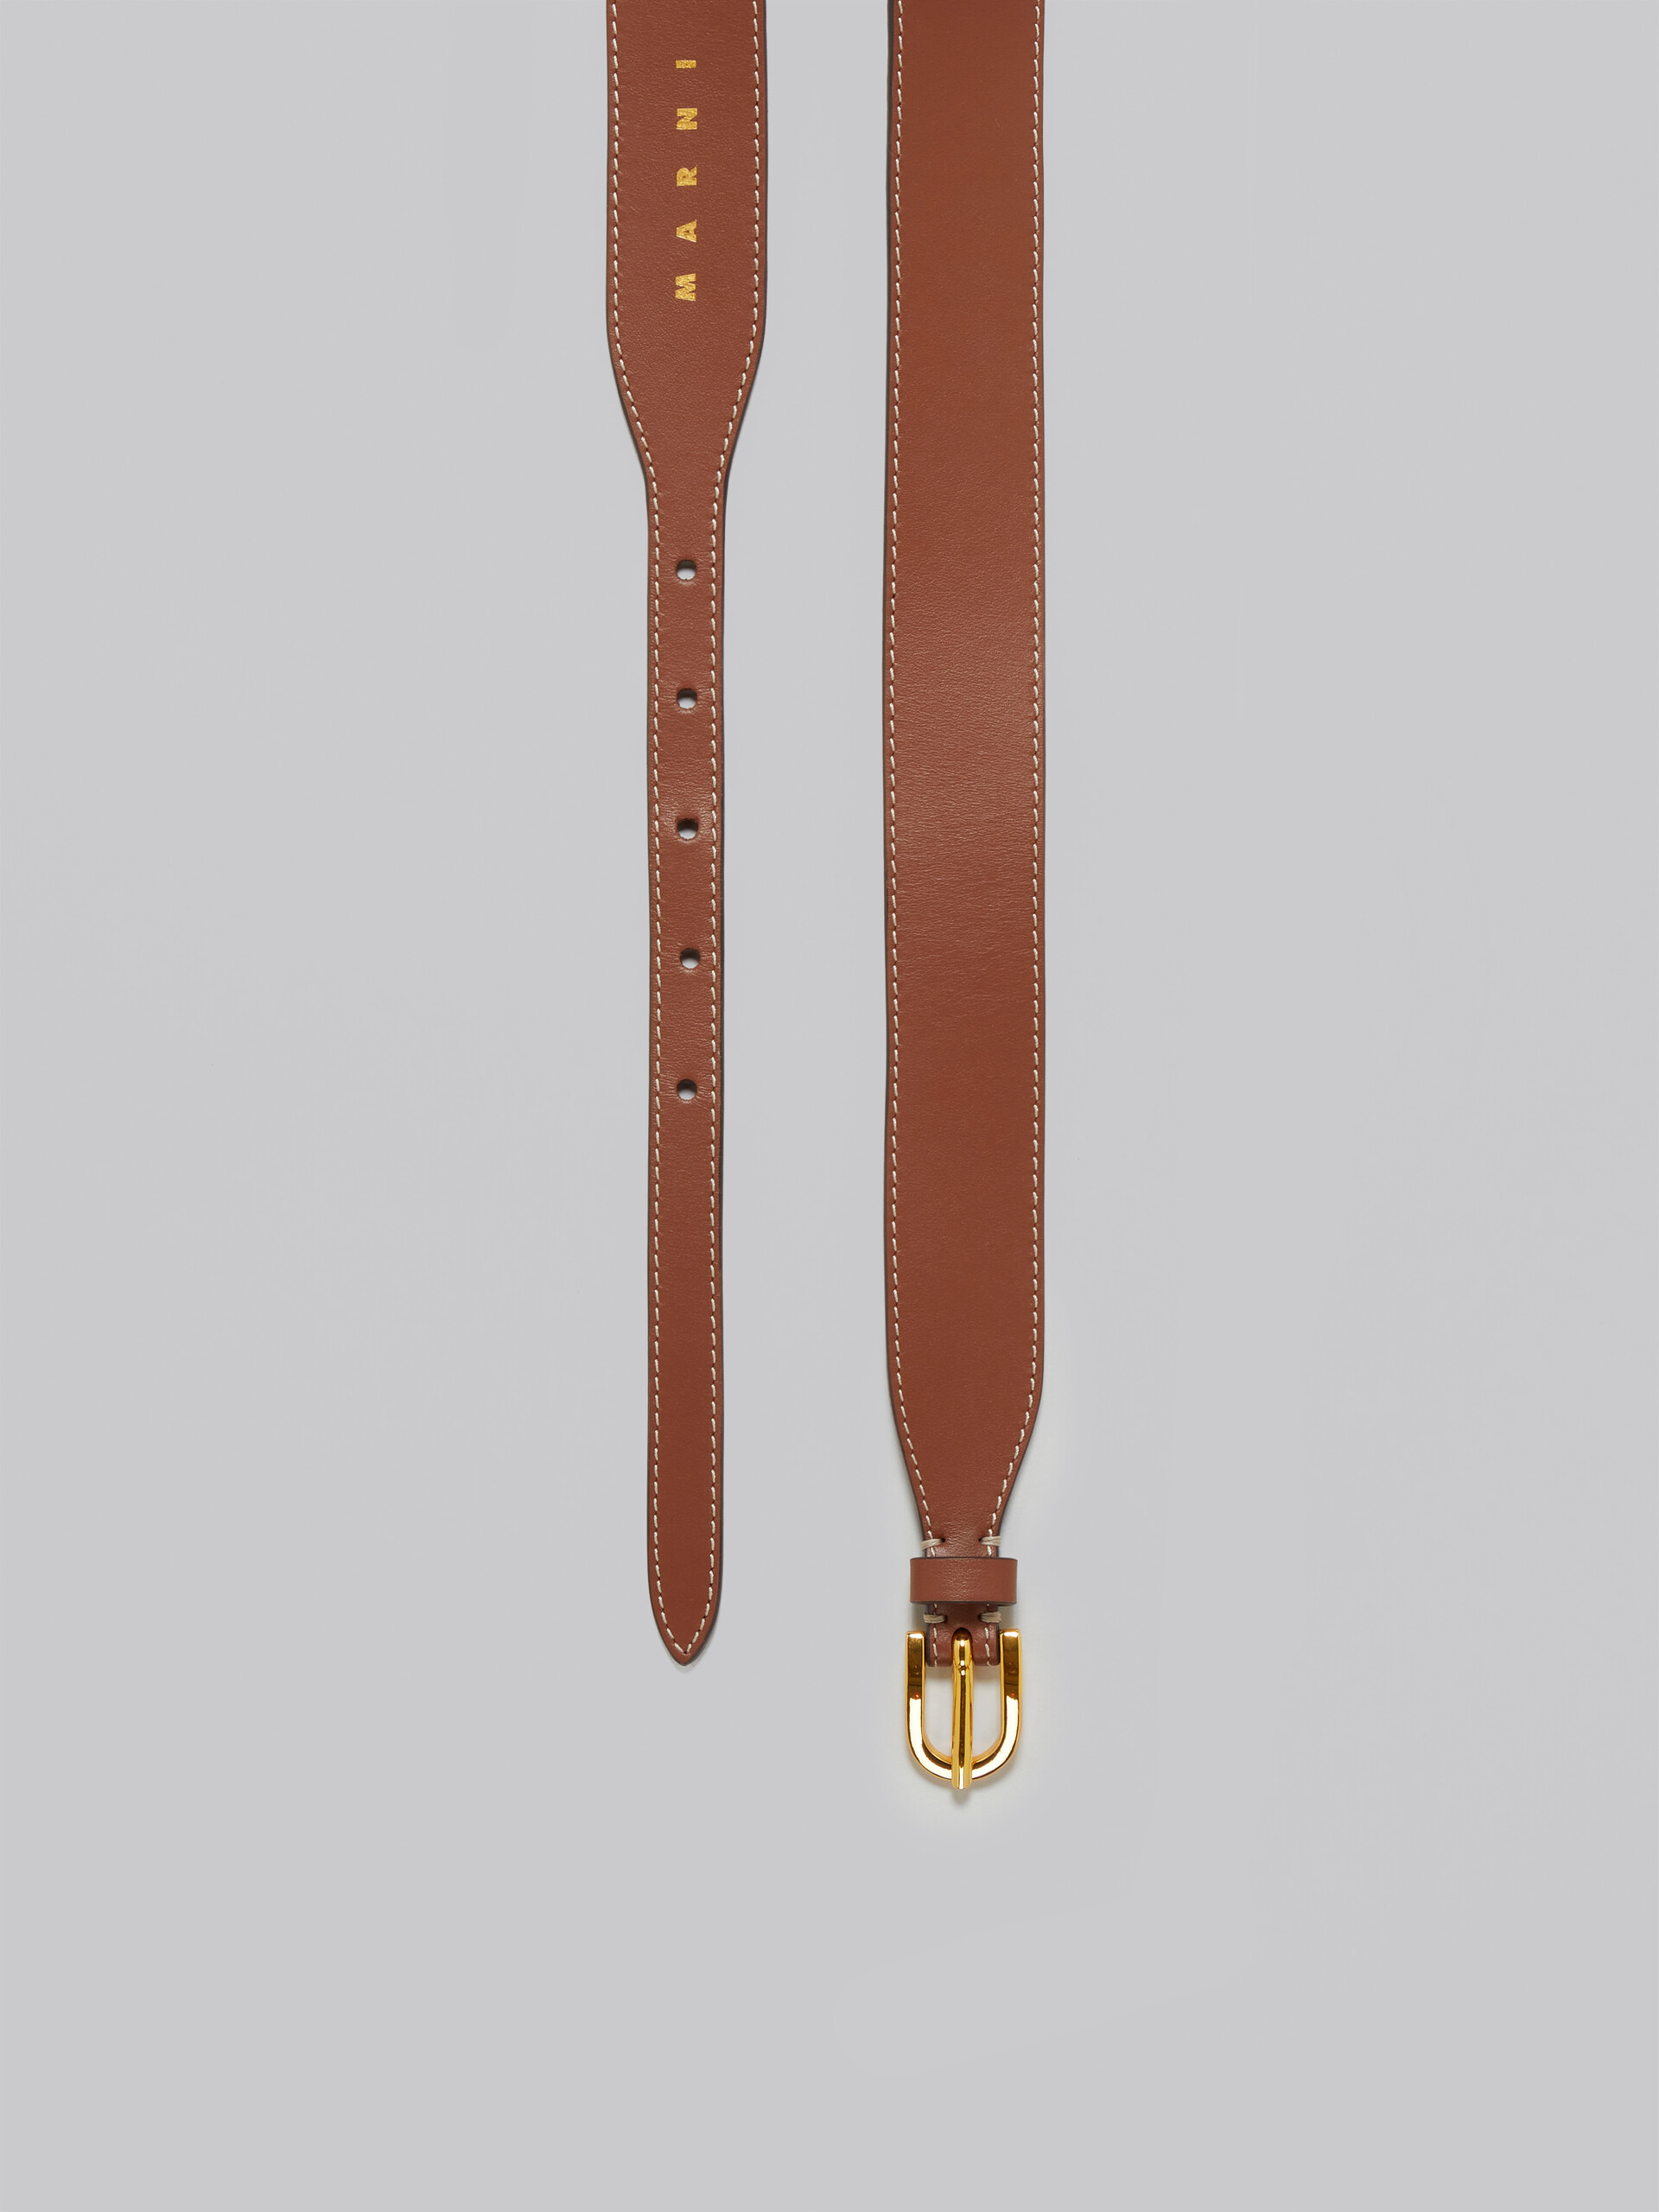 Cintura in pelle marrone - Cintura - Image 4